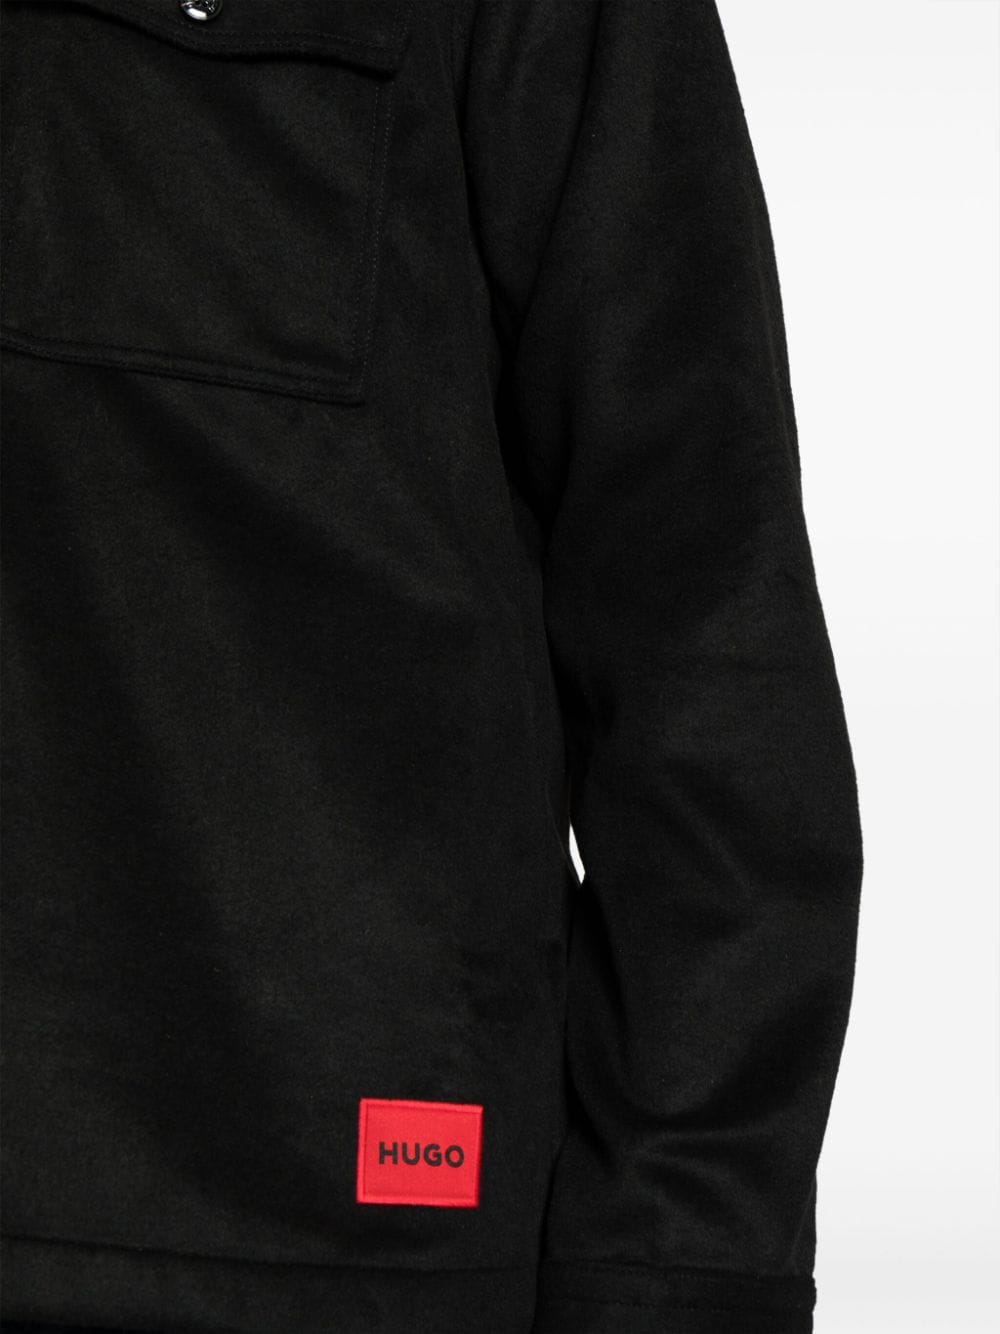 HUGO MEN Logo-Patch Long Sleeves Enalu Oversized-fit Shirt Black - MAISONDEFASHION.COM